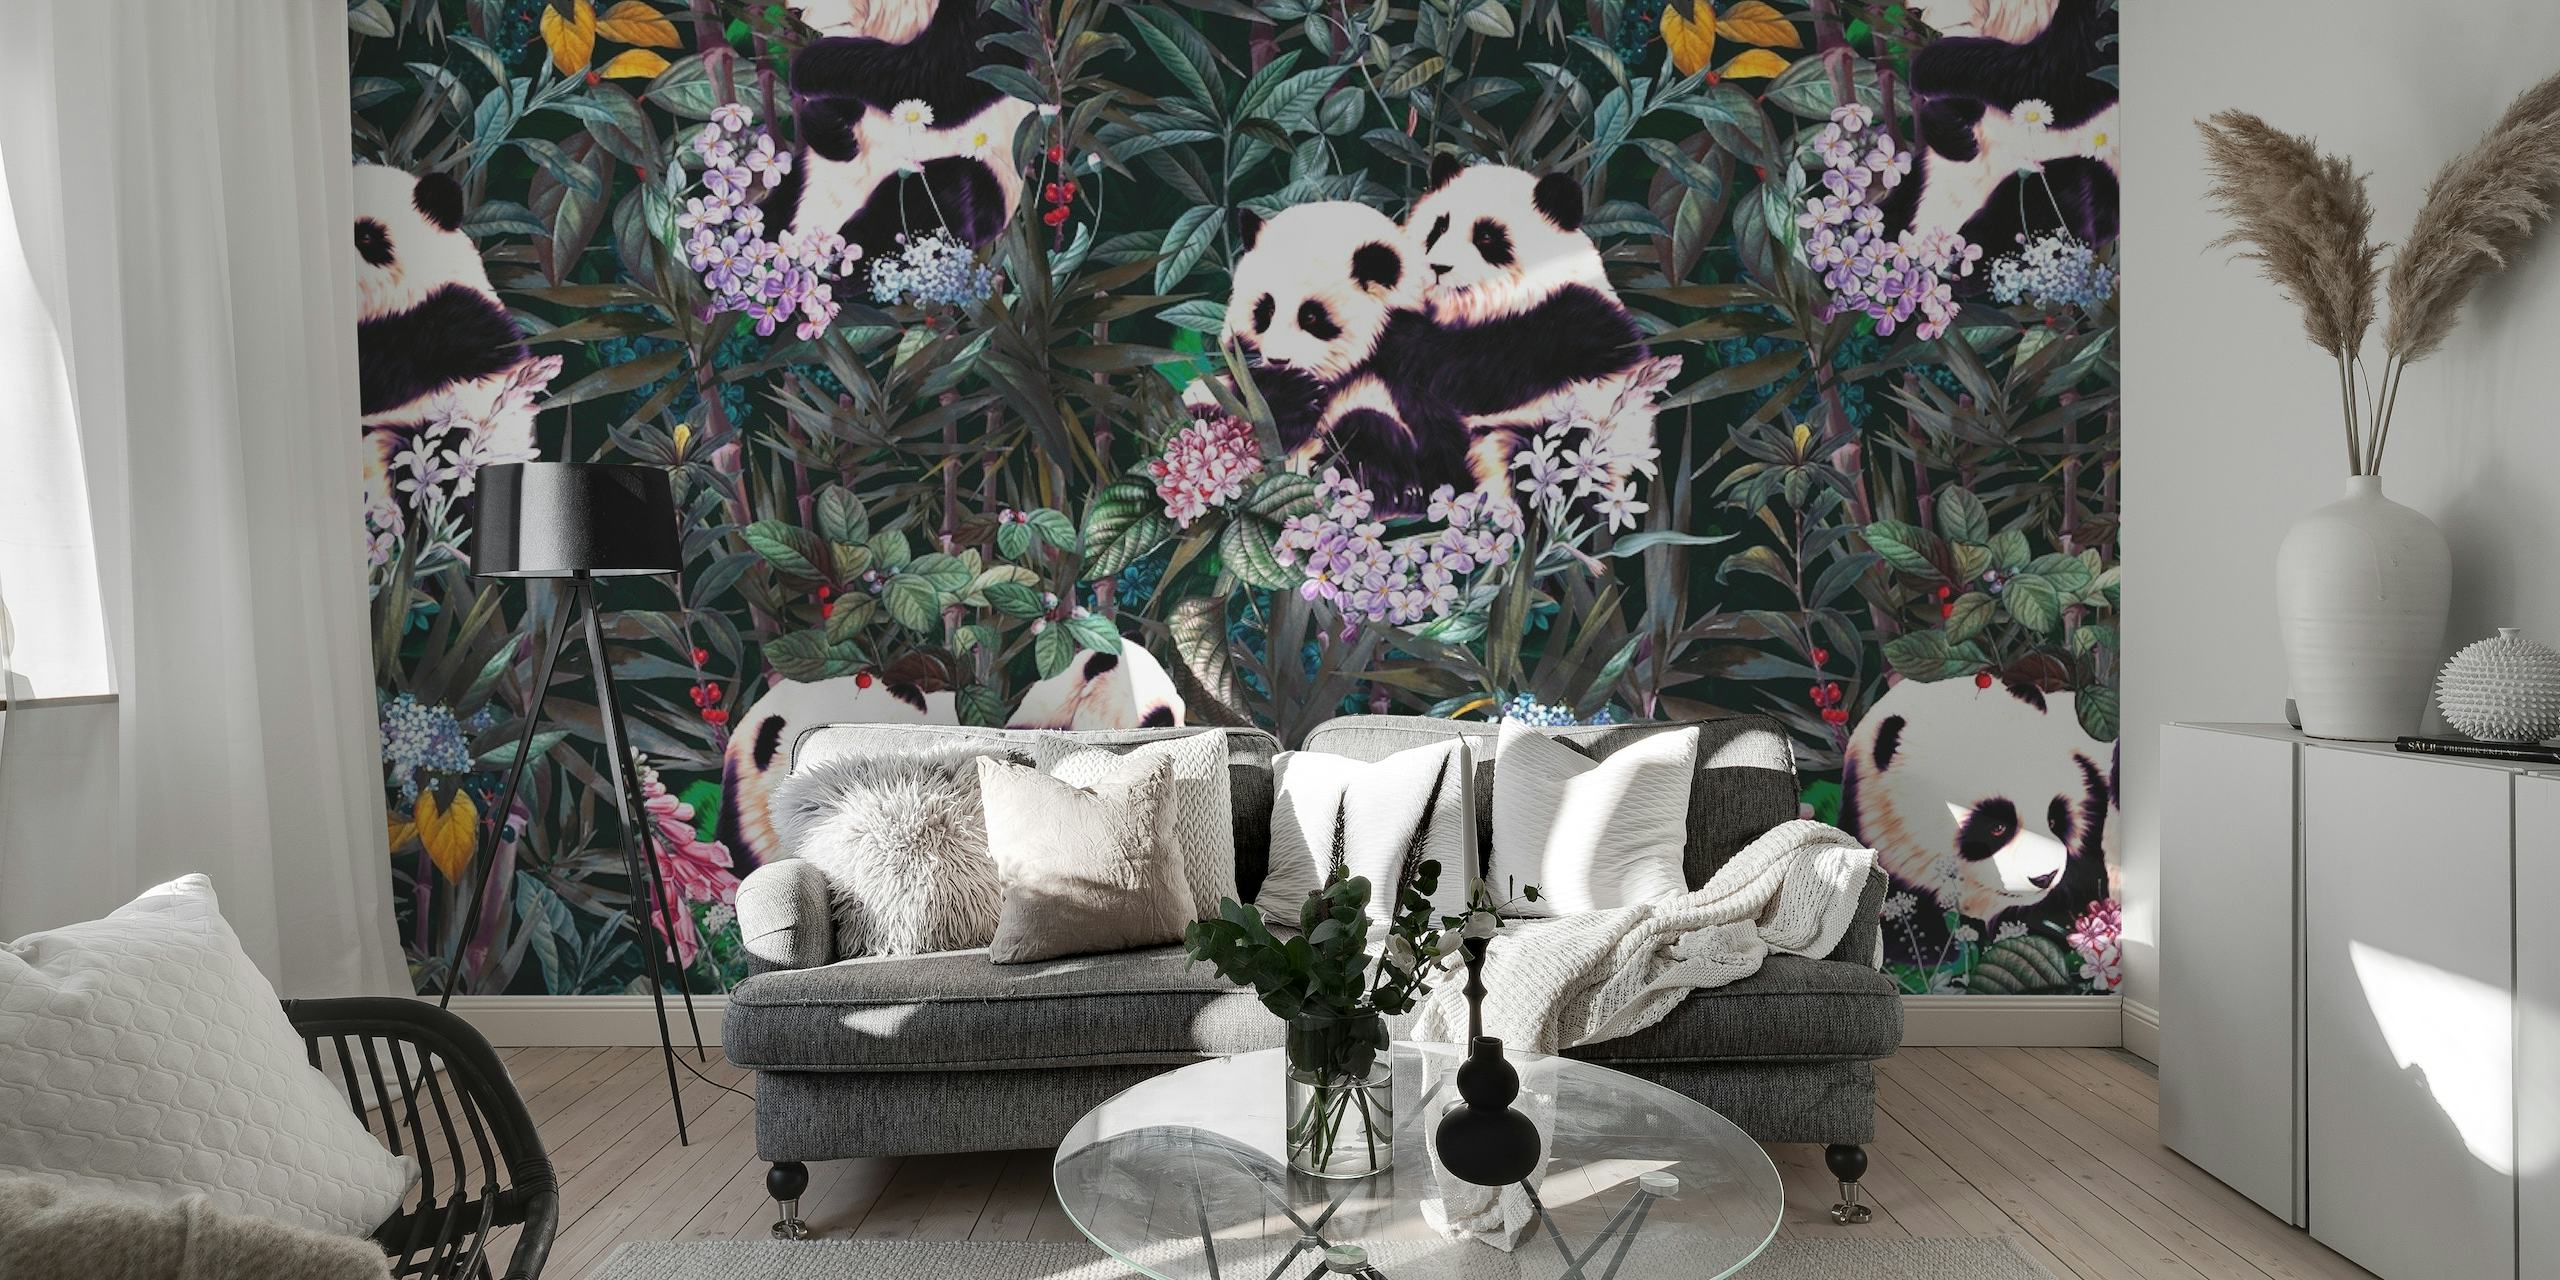 Playful pandas amidst lush rainforest flora on wall mural